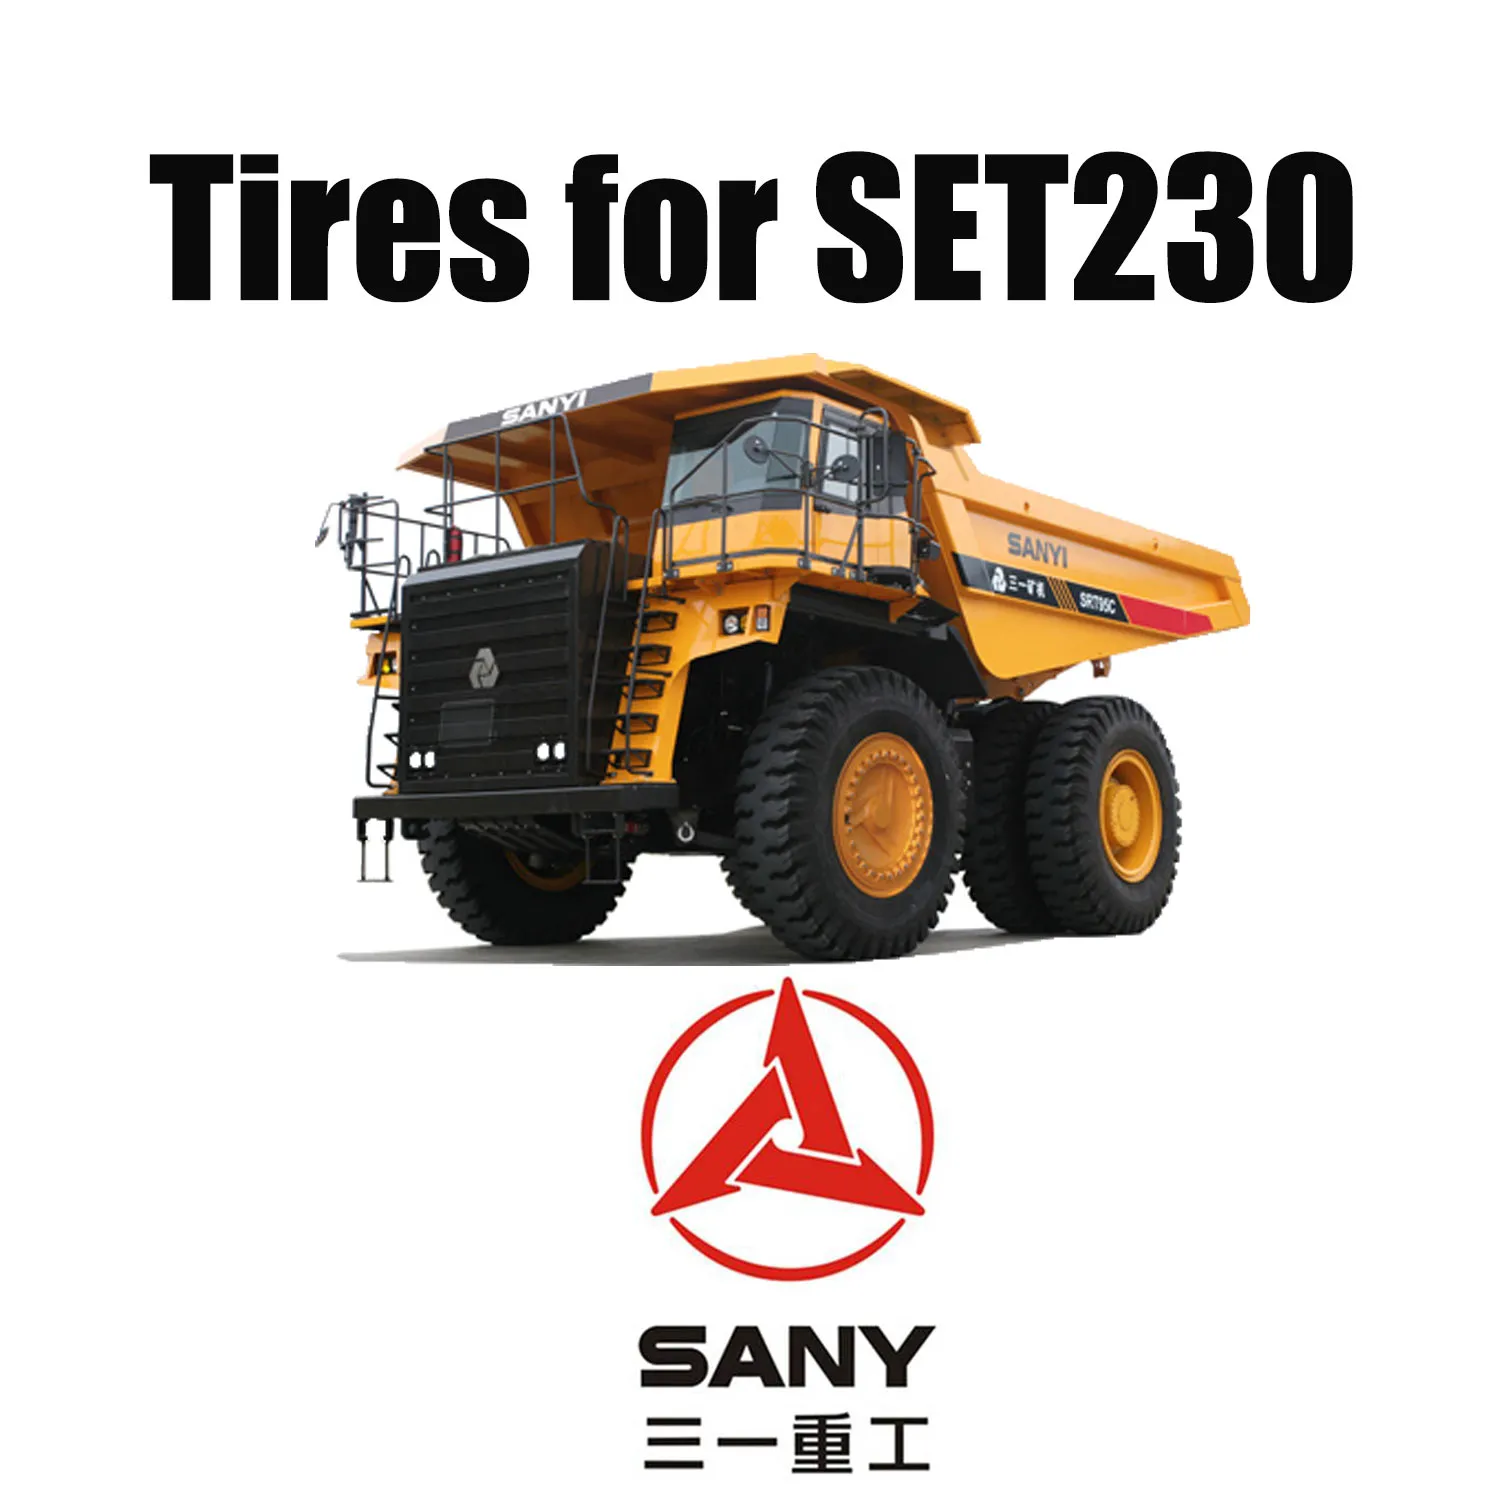 Pneus radiais OTR 40.00R57 com excelente banda de rodagem resistente a cortes para caminhão de mineração SANY SET230